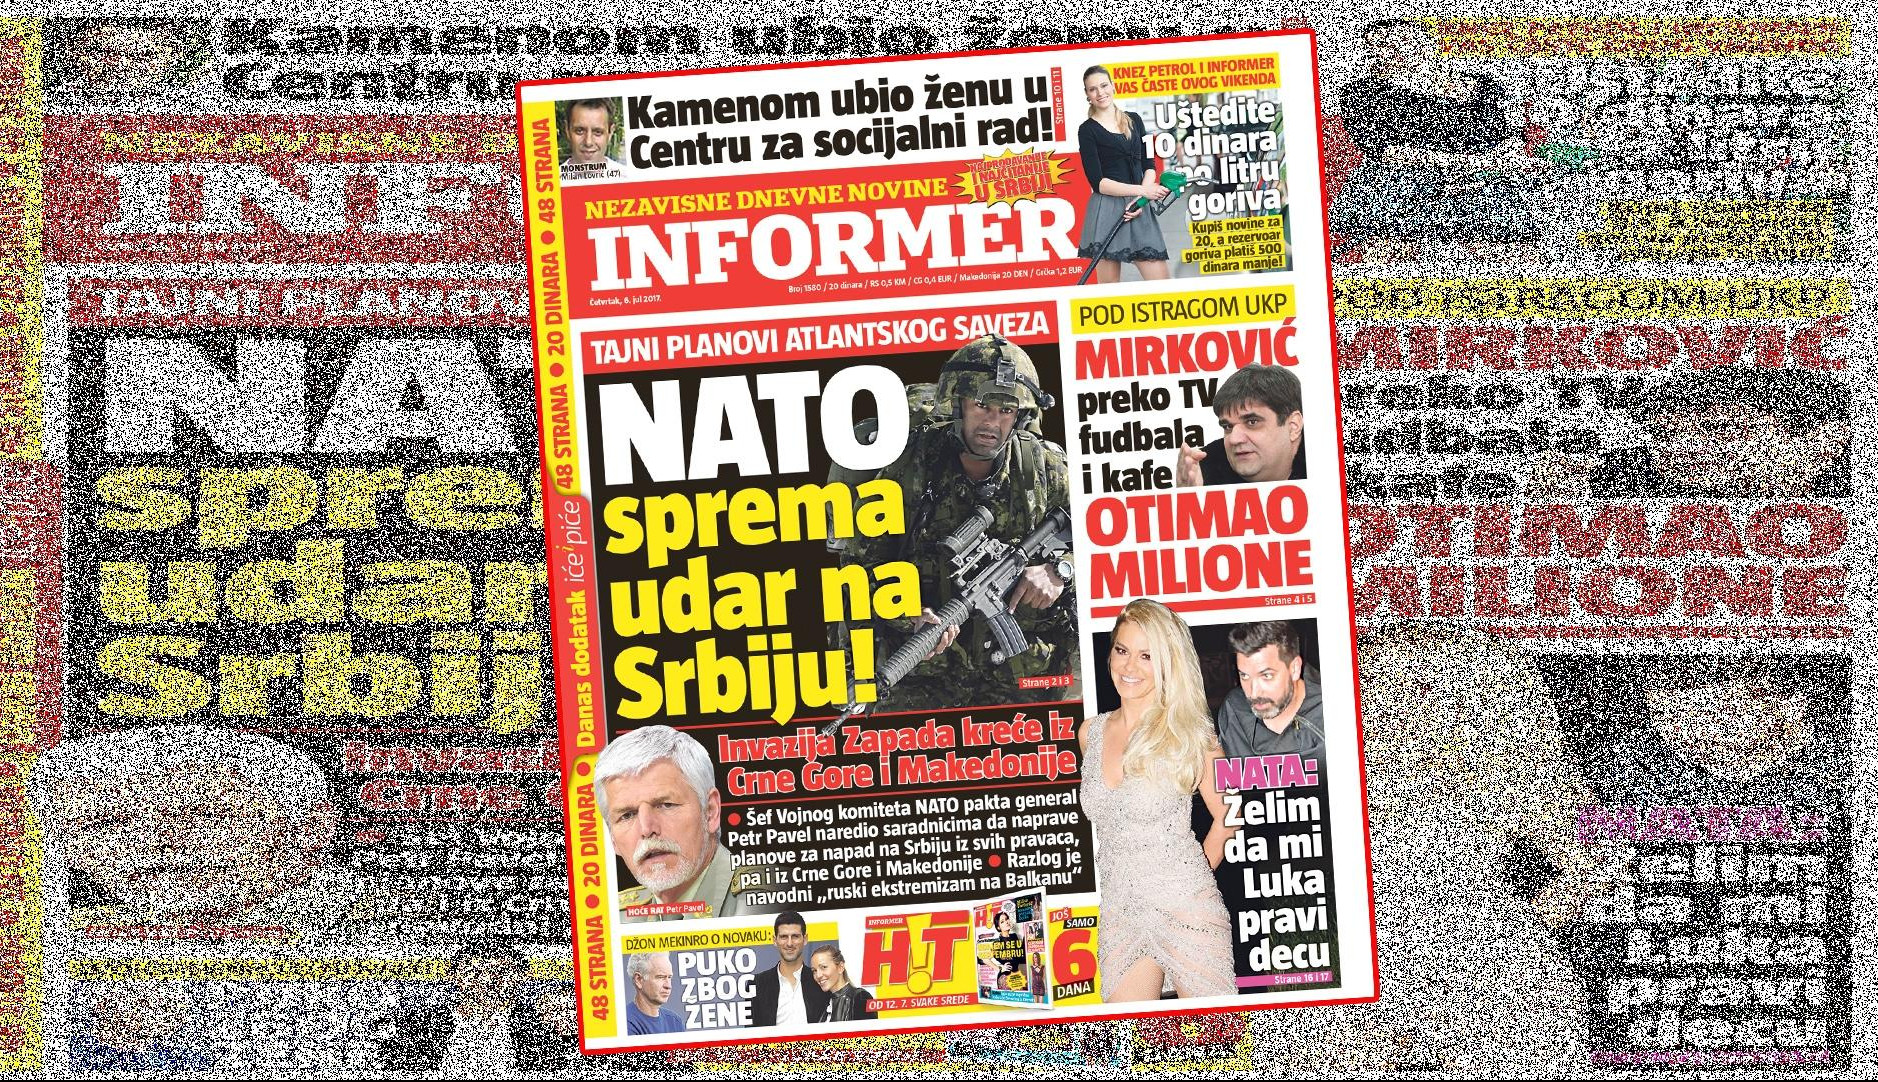 SAMO U INFORMERU! NATO SPREMA UDAR NA SRBIJU - Invazija Zapada kreće iz Crne Gore i Makedonije!